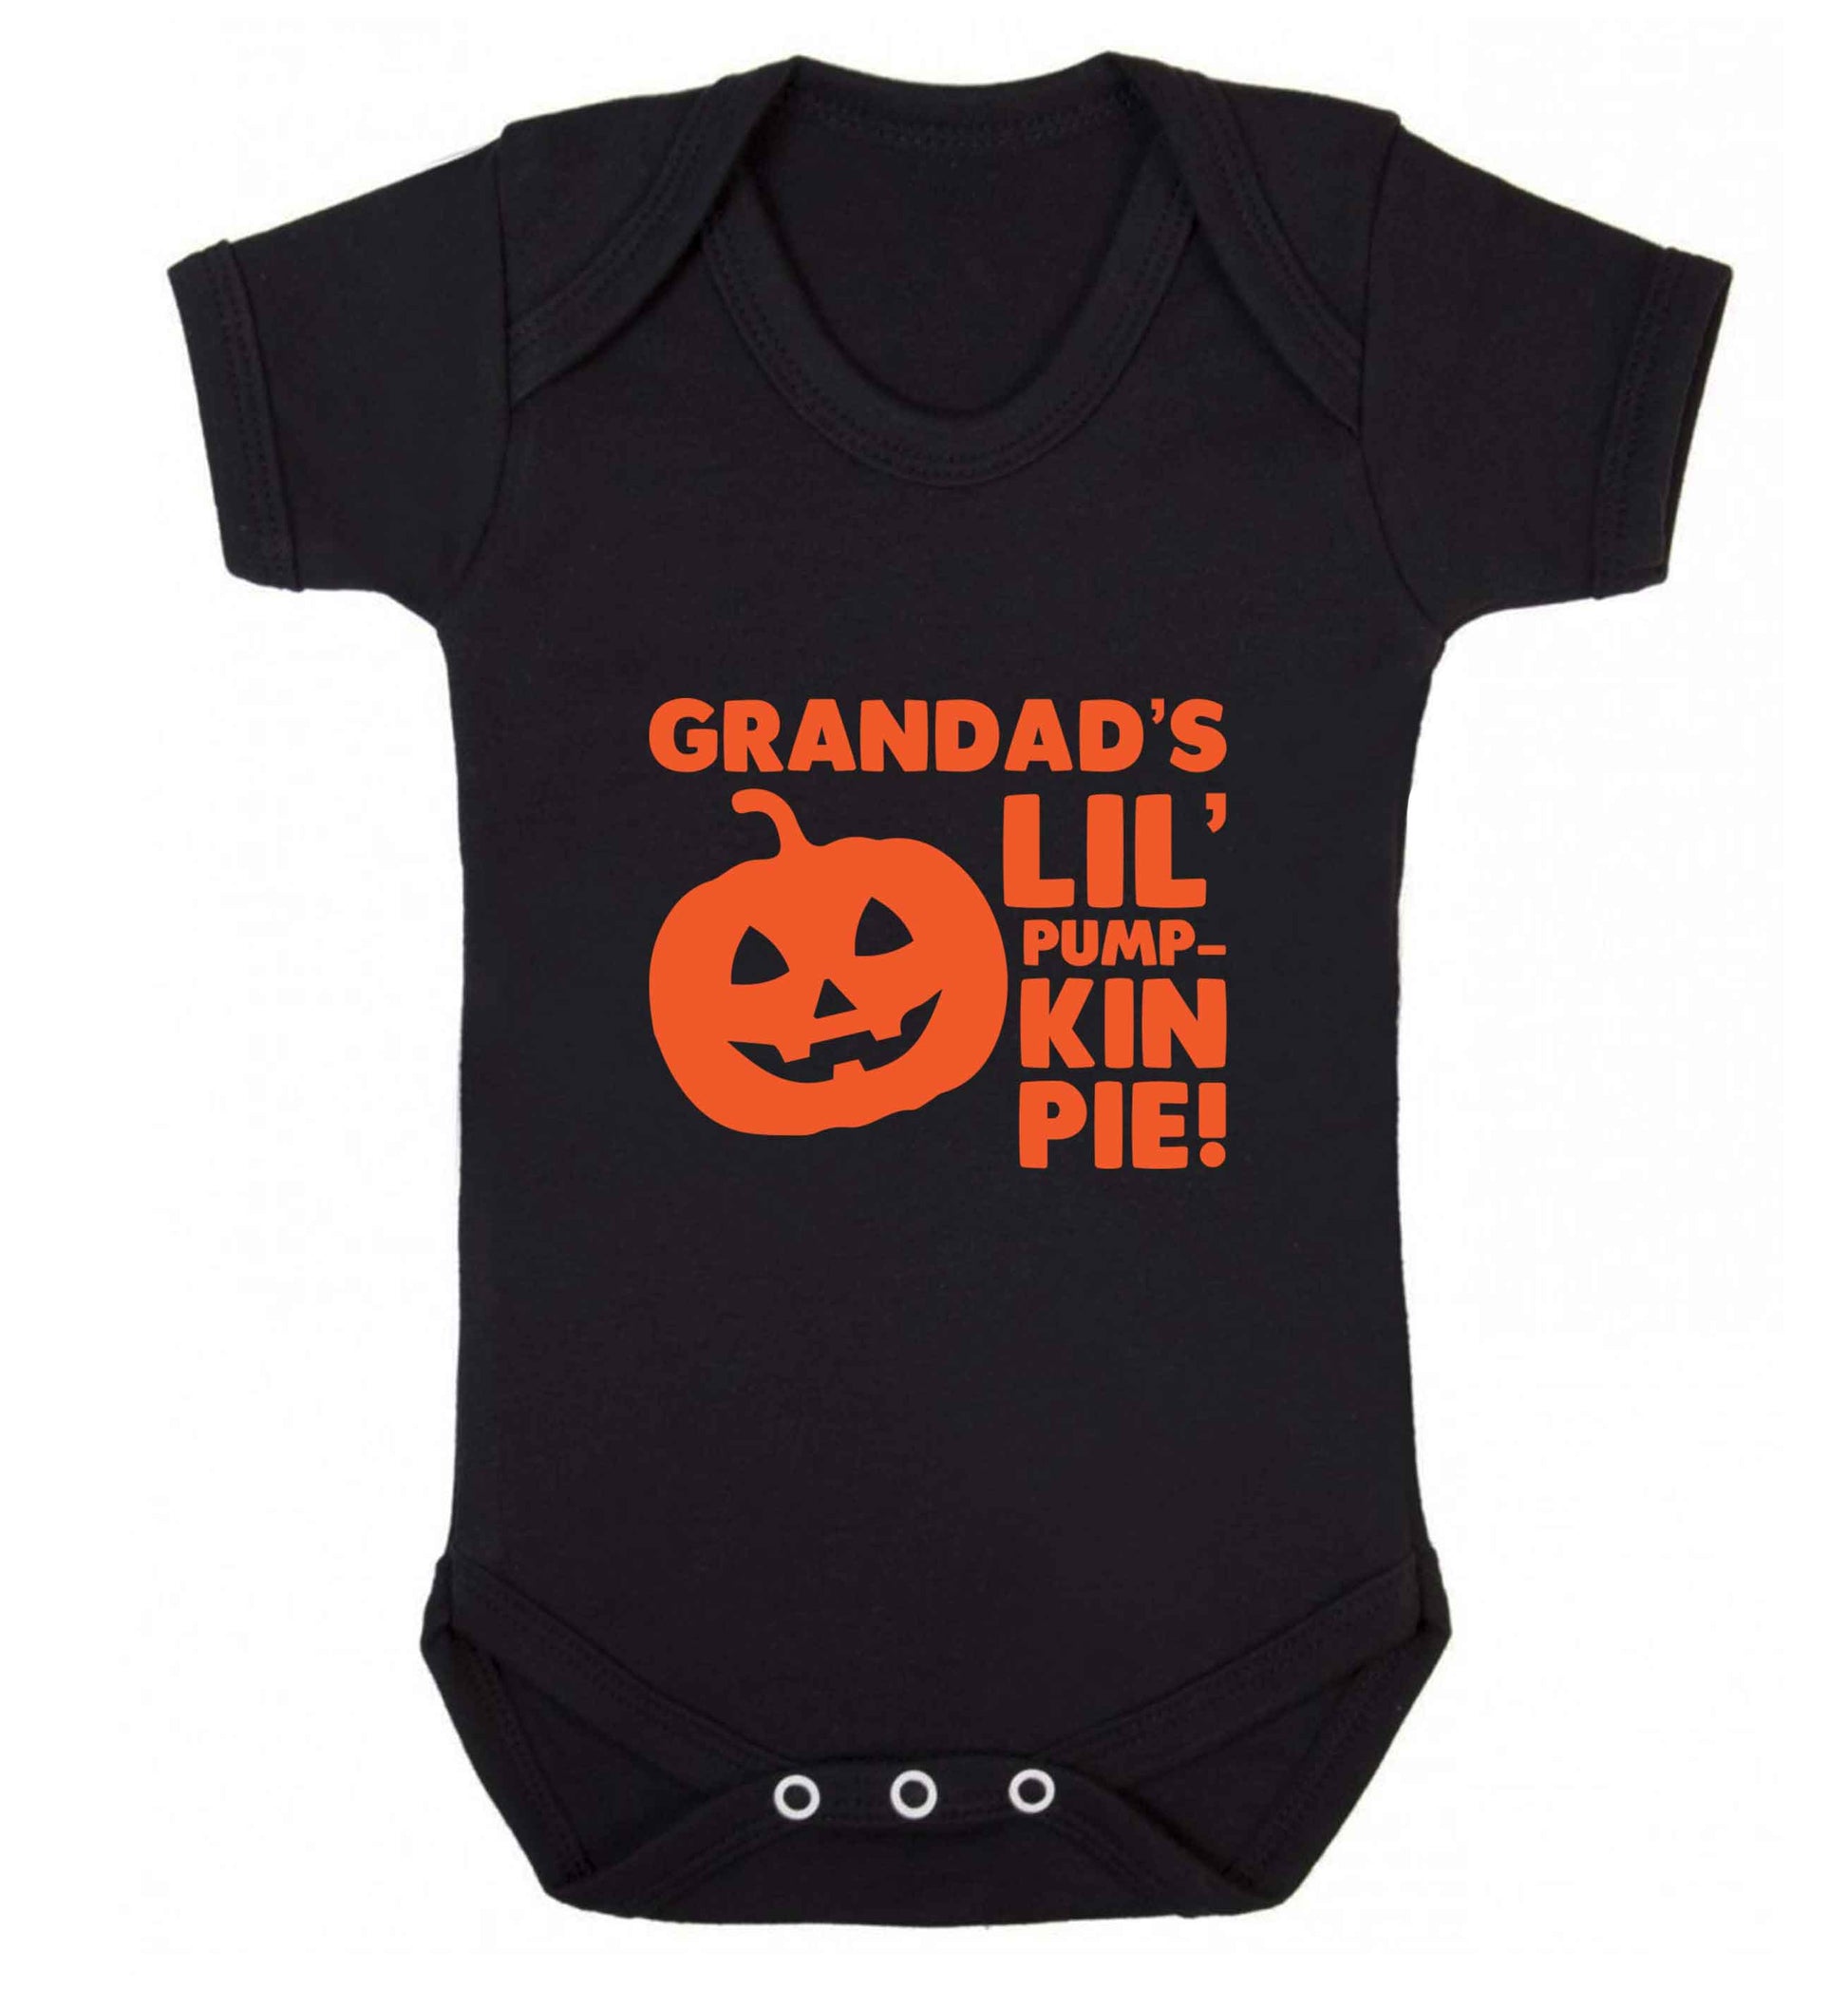 Grandad's lil' pumpkin pie baby vest black 18-24 months